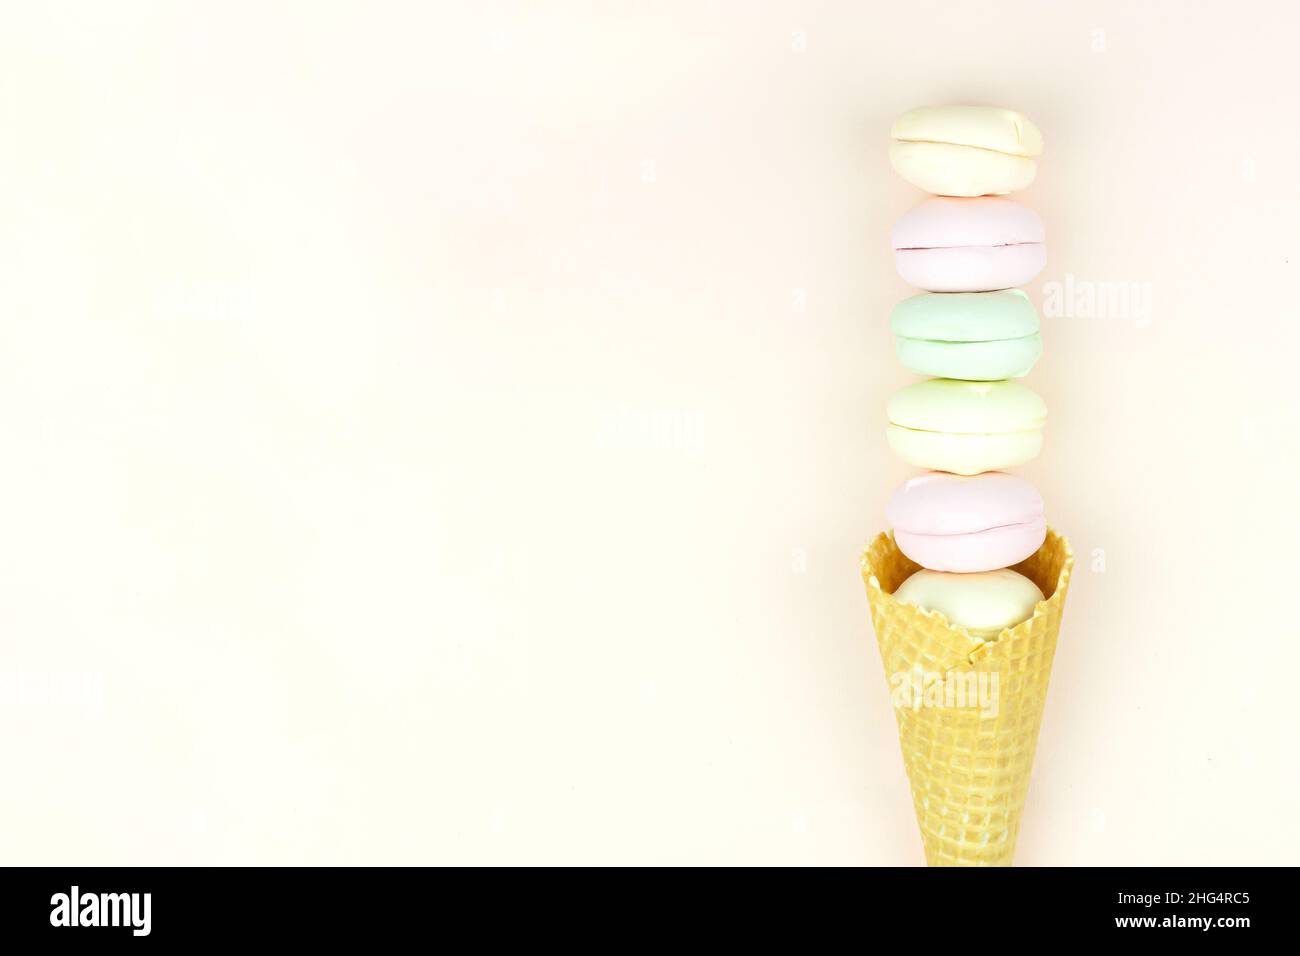 Le cornet à motif gaufré avec guimauve colorée ressemble à des macarons sur fond rose pastel.vue du dessus.Espace libre pour le texte Banque D'Images